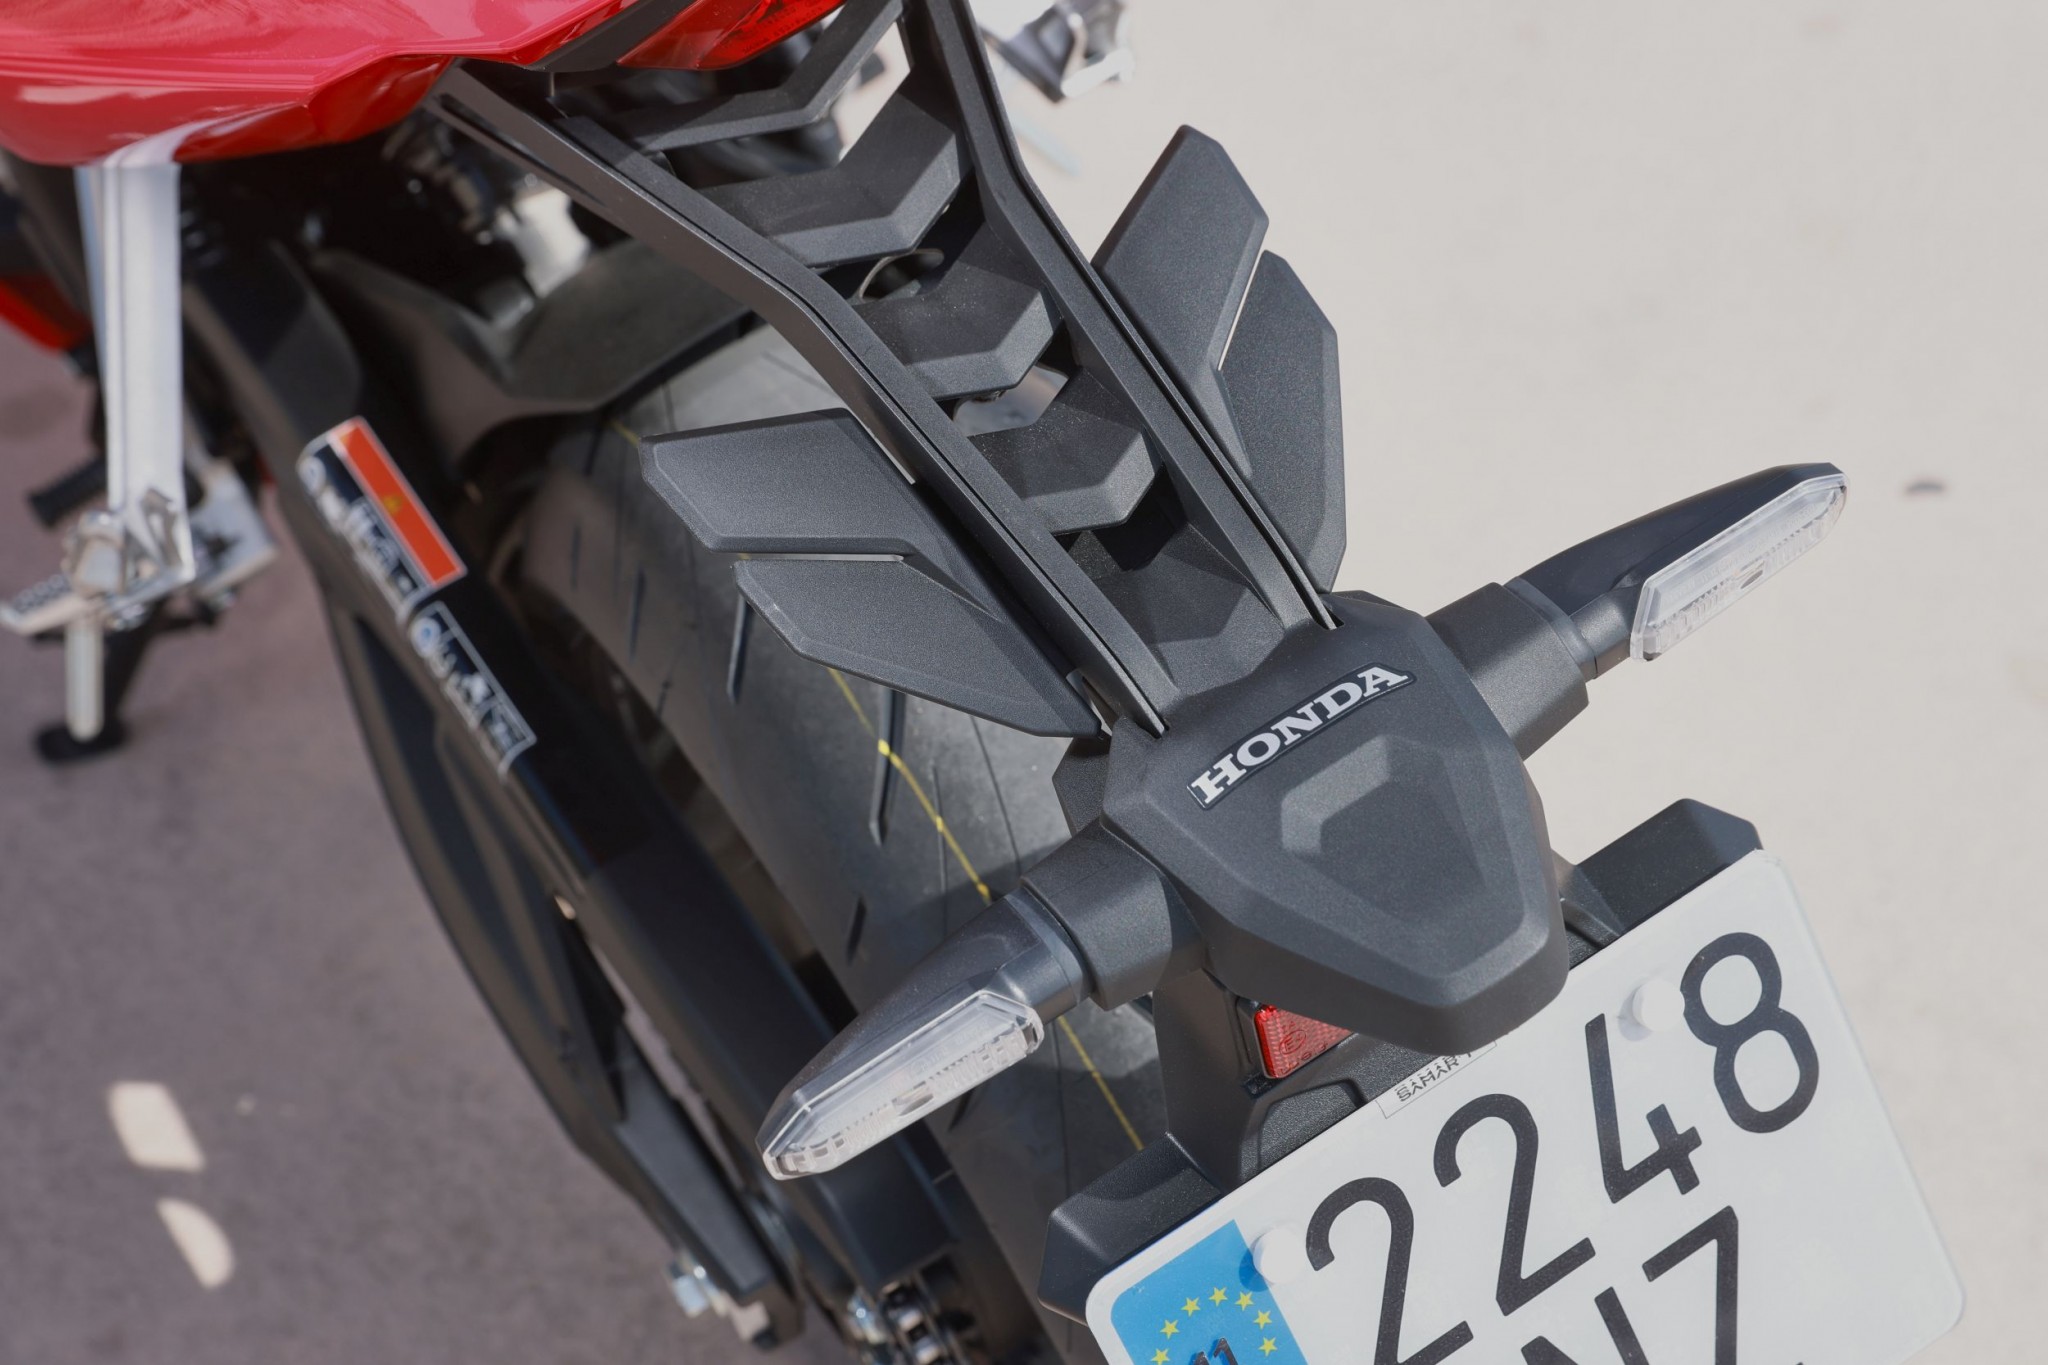 Test elektronske kvačila Honda CBR650R 2024

Honda je nedavno predstavila novu verziju svog popularnog motocikla CBR650R, koji sada dolazi sa elektronskim kvačilom, poznatim kao E-Clutch. Ova inovacija obećava da će olakšati vožnju omogućavajući vozačima da menjaju brzine bez potrebe za ručnim korišćenjem kvačila. 

Elektronsko kvačilo funkcioniše tako što automatski reguliše pritisak potreban za aktiviranje kvačila, što omogućava glatke promene brzina bez prekida u isporuci snage. Ovo je posebno korisno pri vožnji u gradu, gde česte promene brzina mogu biti naporne i otežavaju koncentraciju na saobraćaj.

Testiranje ovog sistema pokazalo je da E-Clutch ne samo da olakšava upravljanje motociklom, već i povećava sigurnost vožnje. Vozači mogu da se fokusiraju na okolinu bez brige o mehaničkim aspektima vožnje, što je posebno važno za manje iskusne vozače.

Honda CBR650R sa elektronskim kvačilom biće dostupna na tržištu od 2024. godine i očekuje se da će privući veliki broj kupaca, kako iskusnih tako i onih koji tek ulaze u svet motociklizma. Ovaj model predstavlja značajan korak napred u tehnologiji motocikala i potencijalno postavlja nove standarde u industriji. - Слика 6